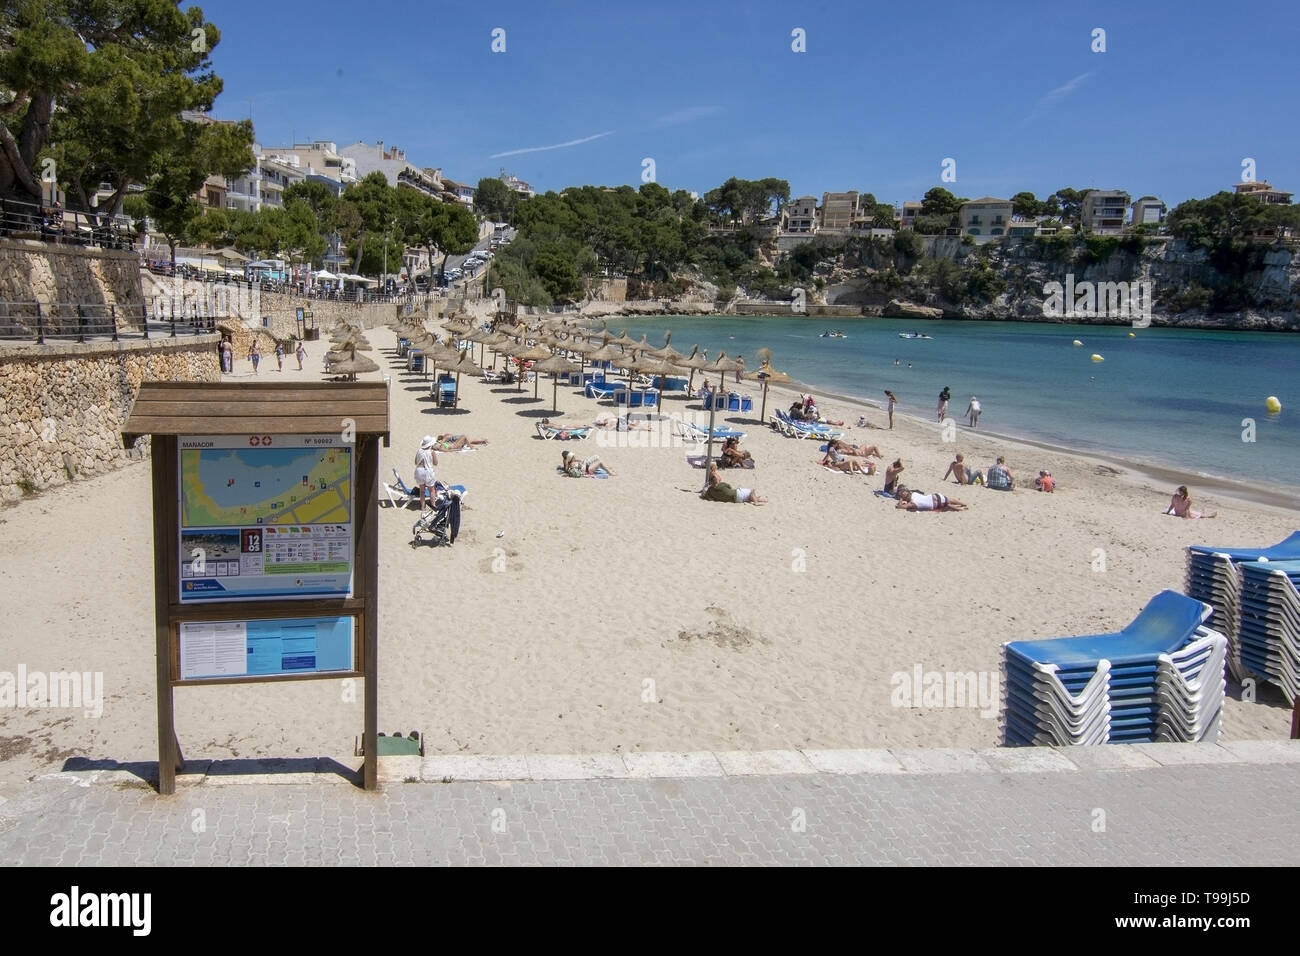 PORTO CRISTO, MALLORCA, Spagna - 16 Maggio 2019: spiaggia sabbiosa con persone in una giornata di sole su 16 Maggio 2019 in Porto Cristo, Mallorca, Spagna. Foto Stock